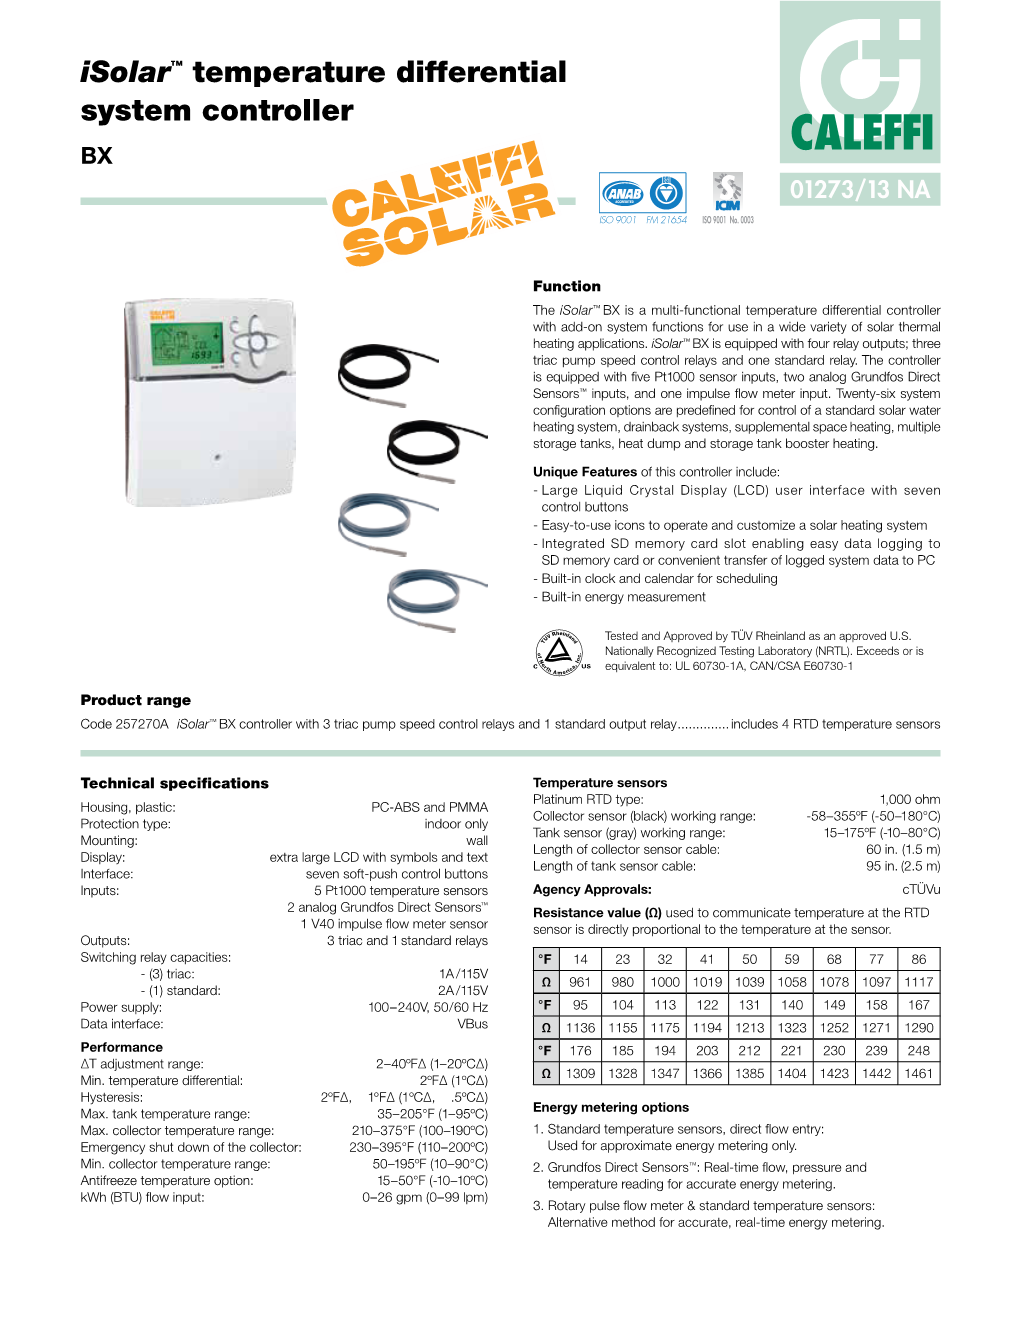 Isolar™ Temperature Differential System Controller BX CALEFFI